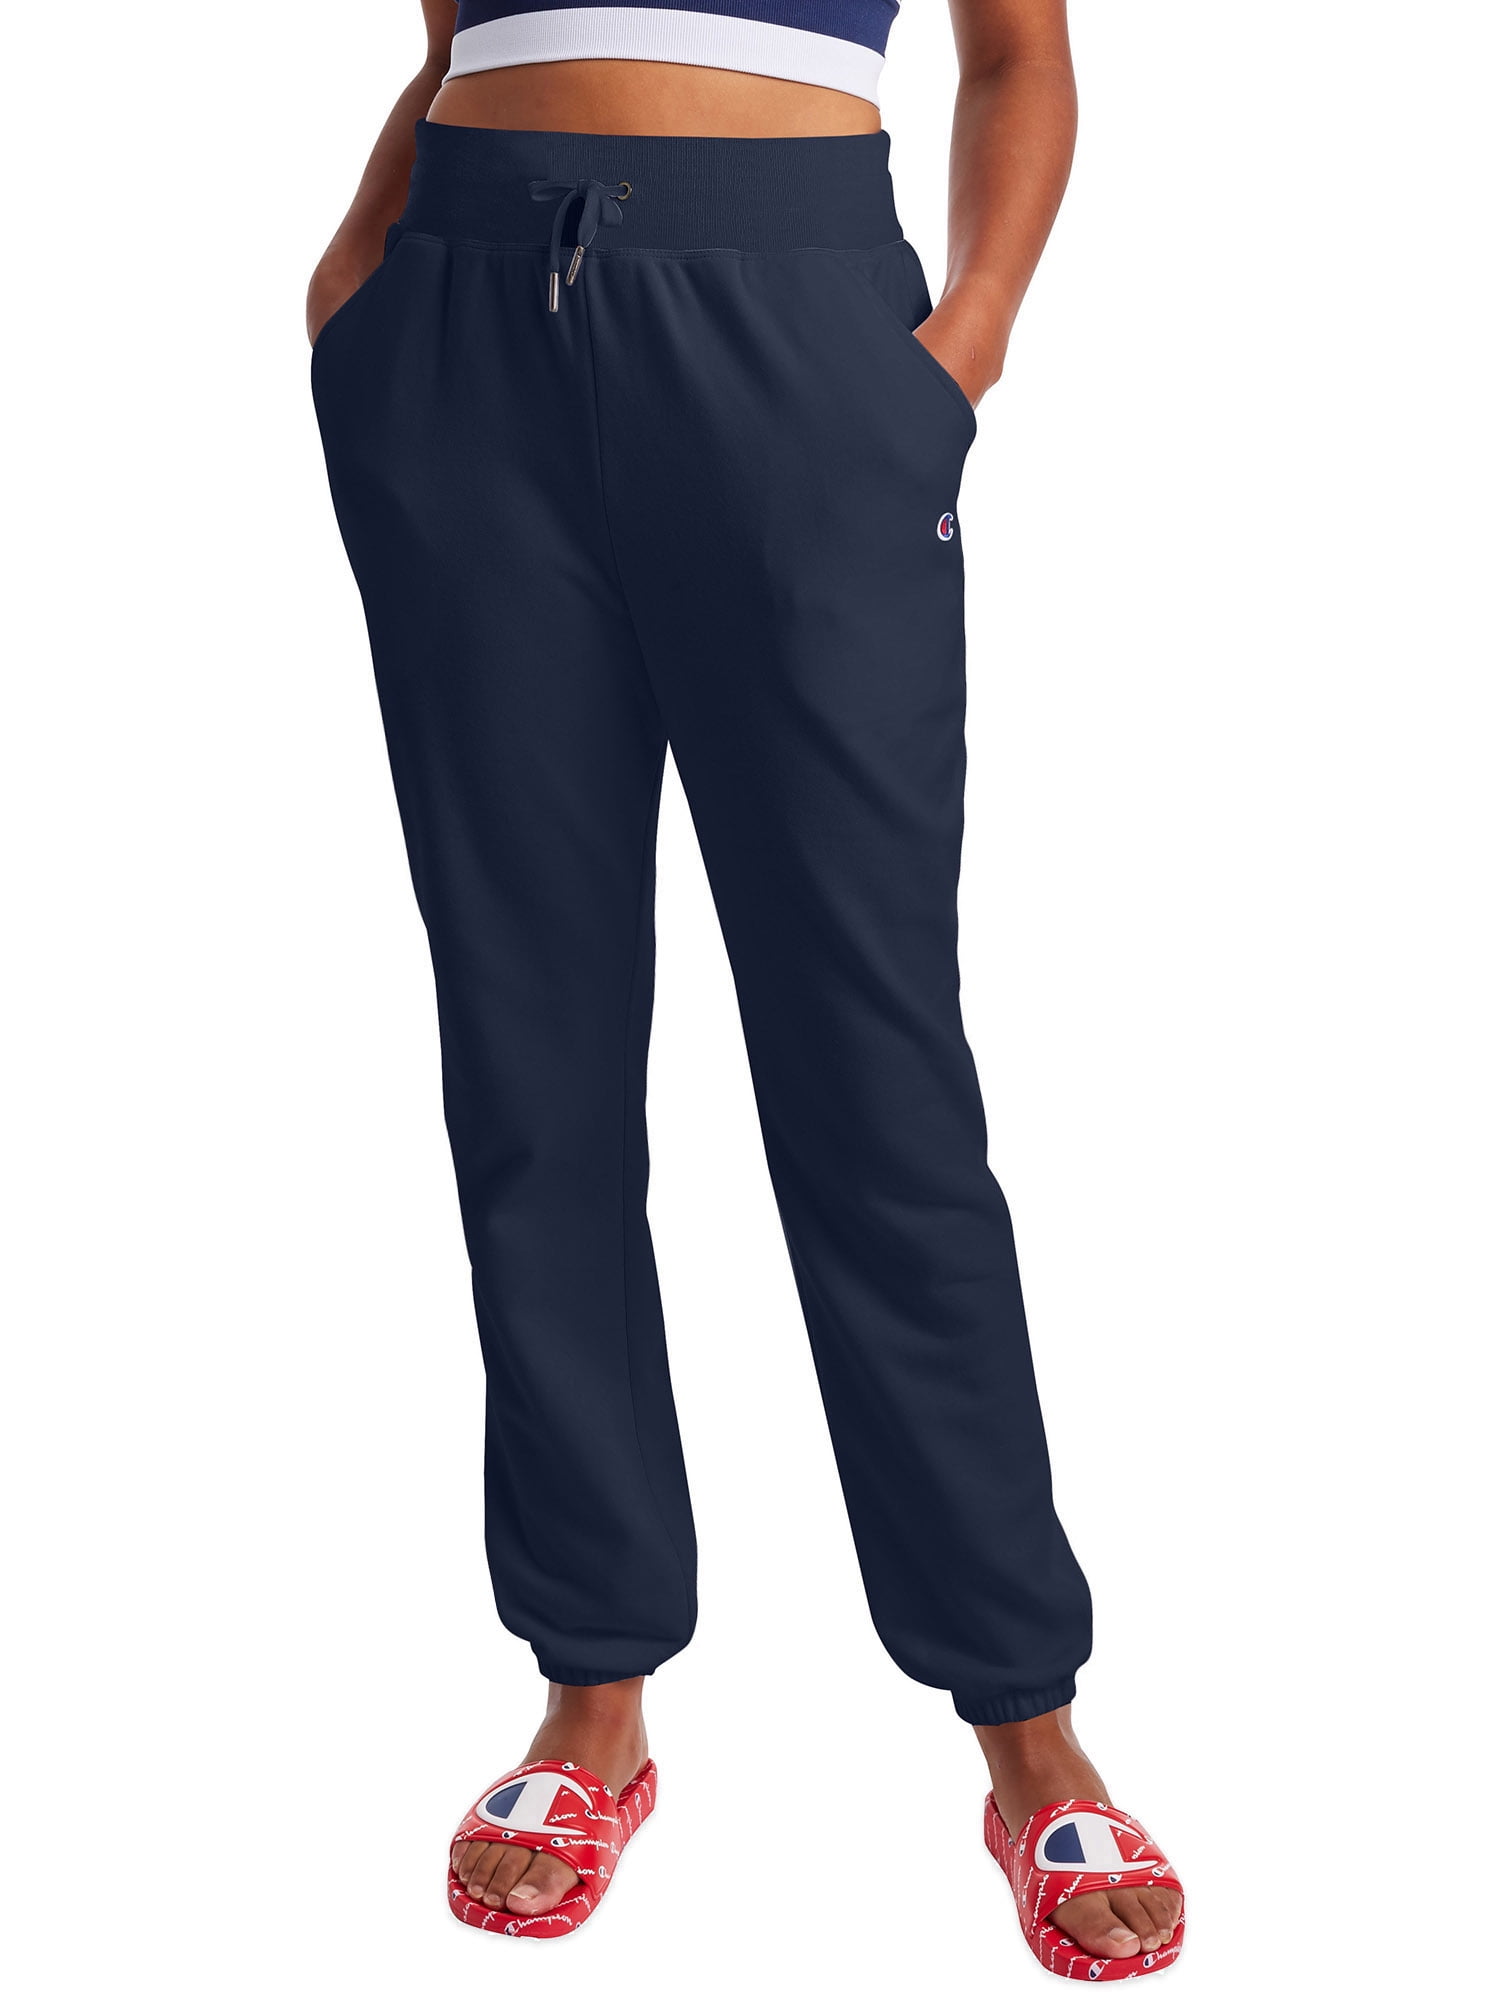 Size L C9 by Champion Girls' Uniform Gray Softball Pants 